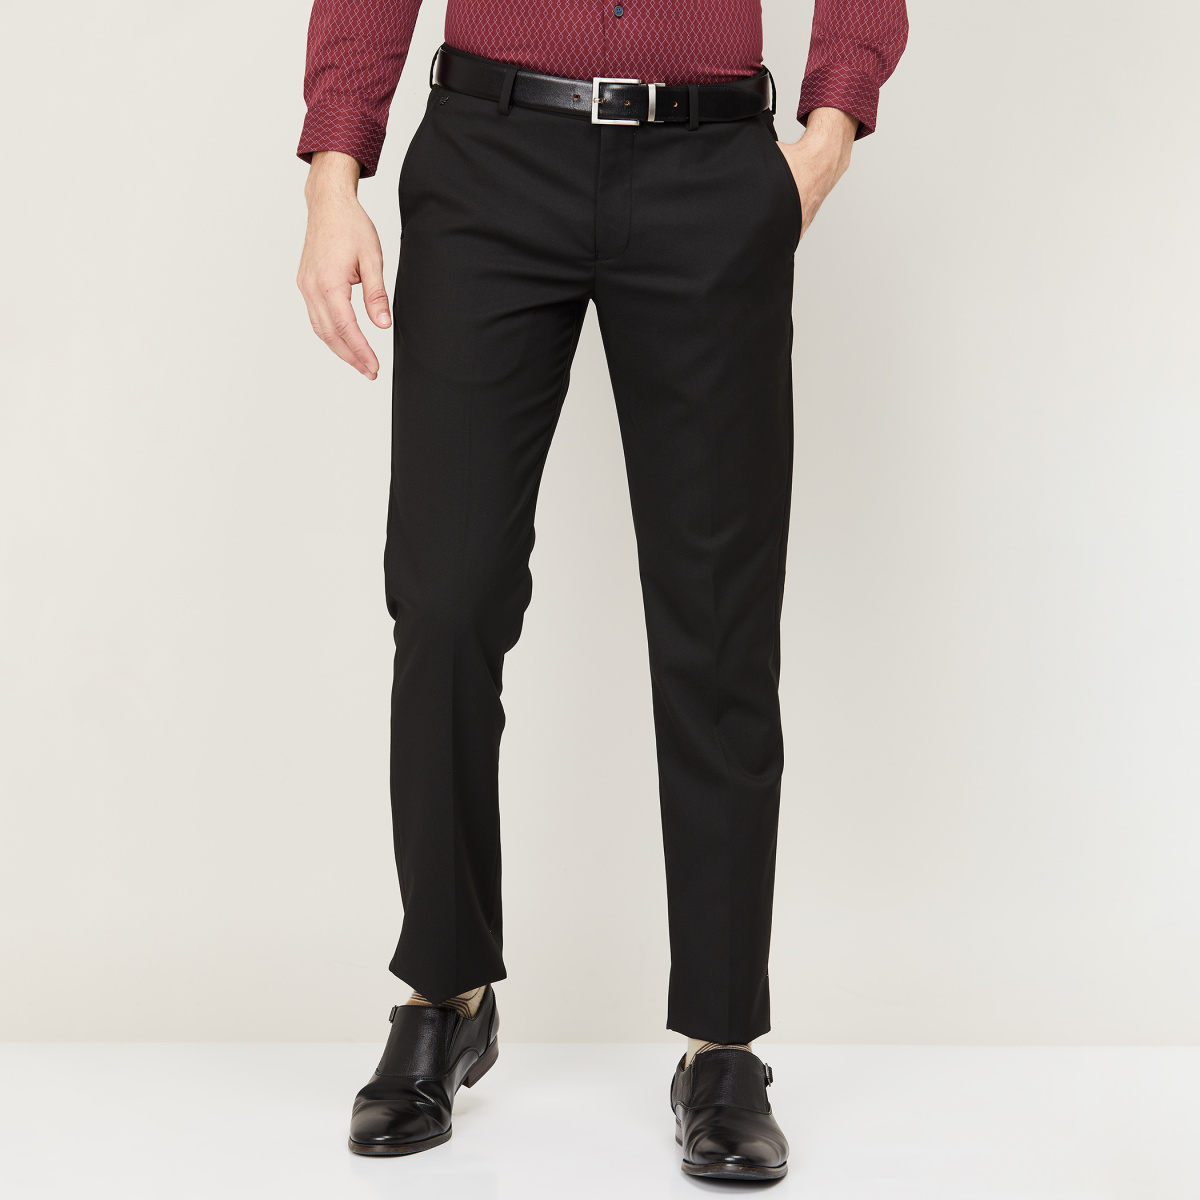 DENNISON Men Smart Self Design Tapered Fit Formal Trousers   dennisonfashionindia